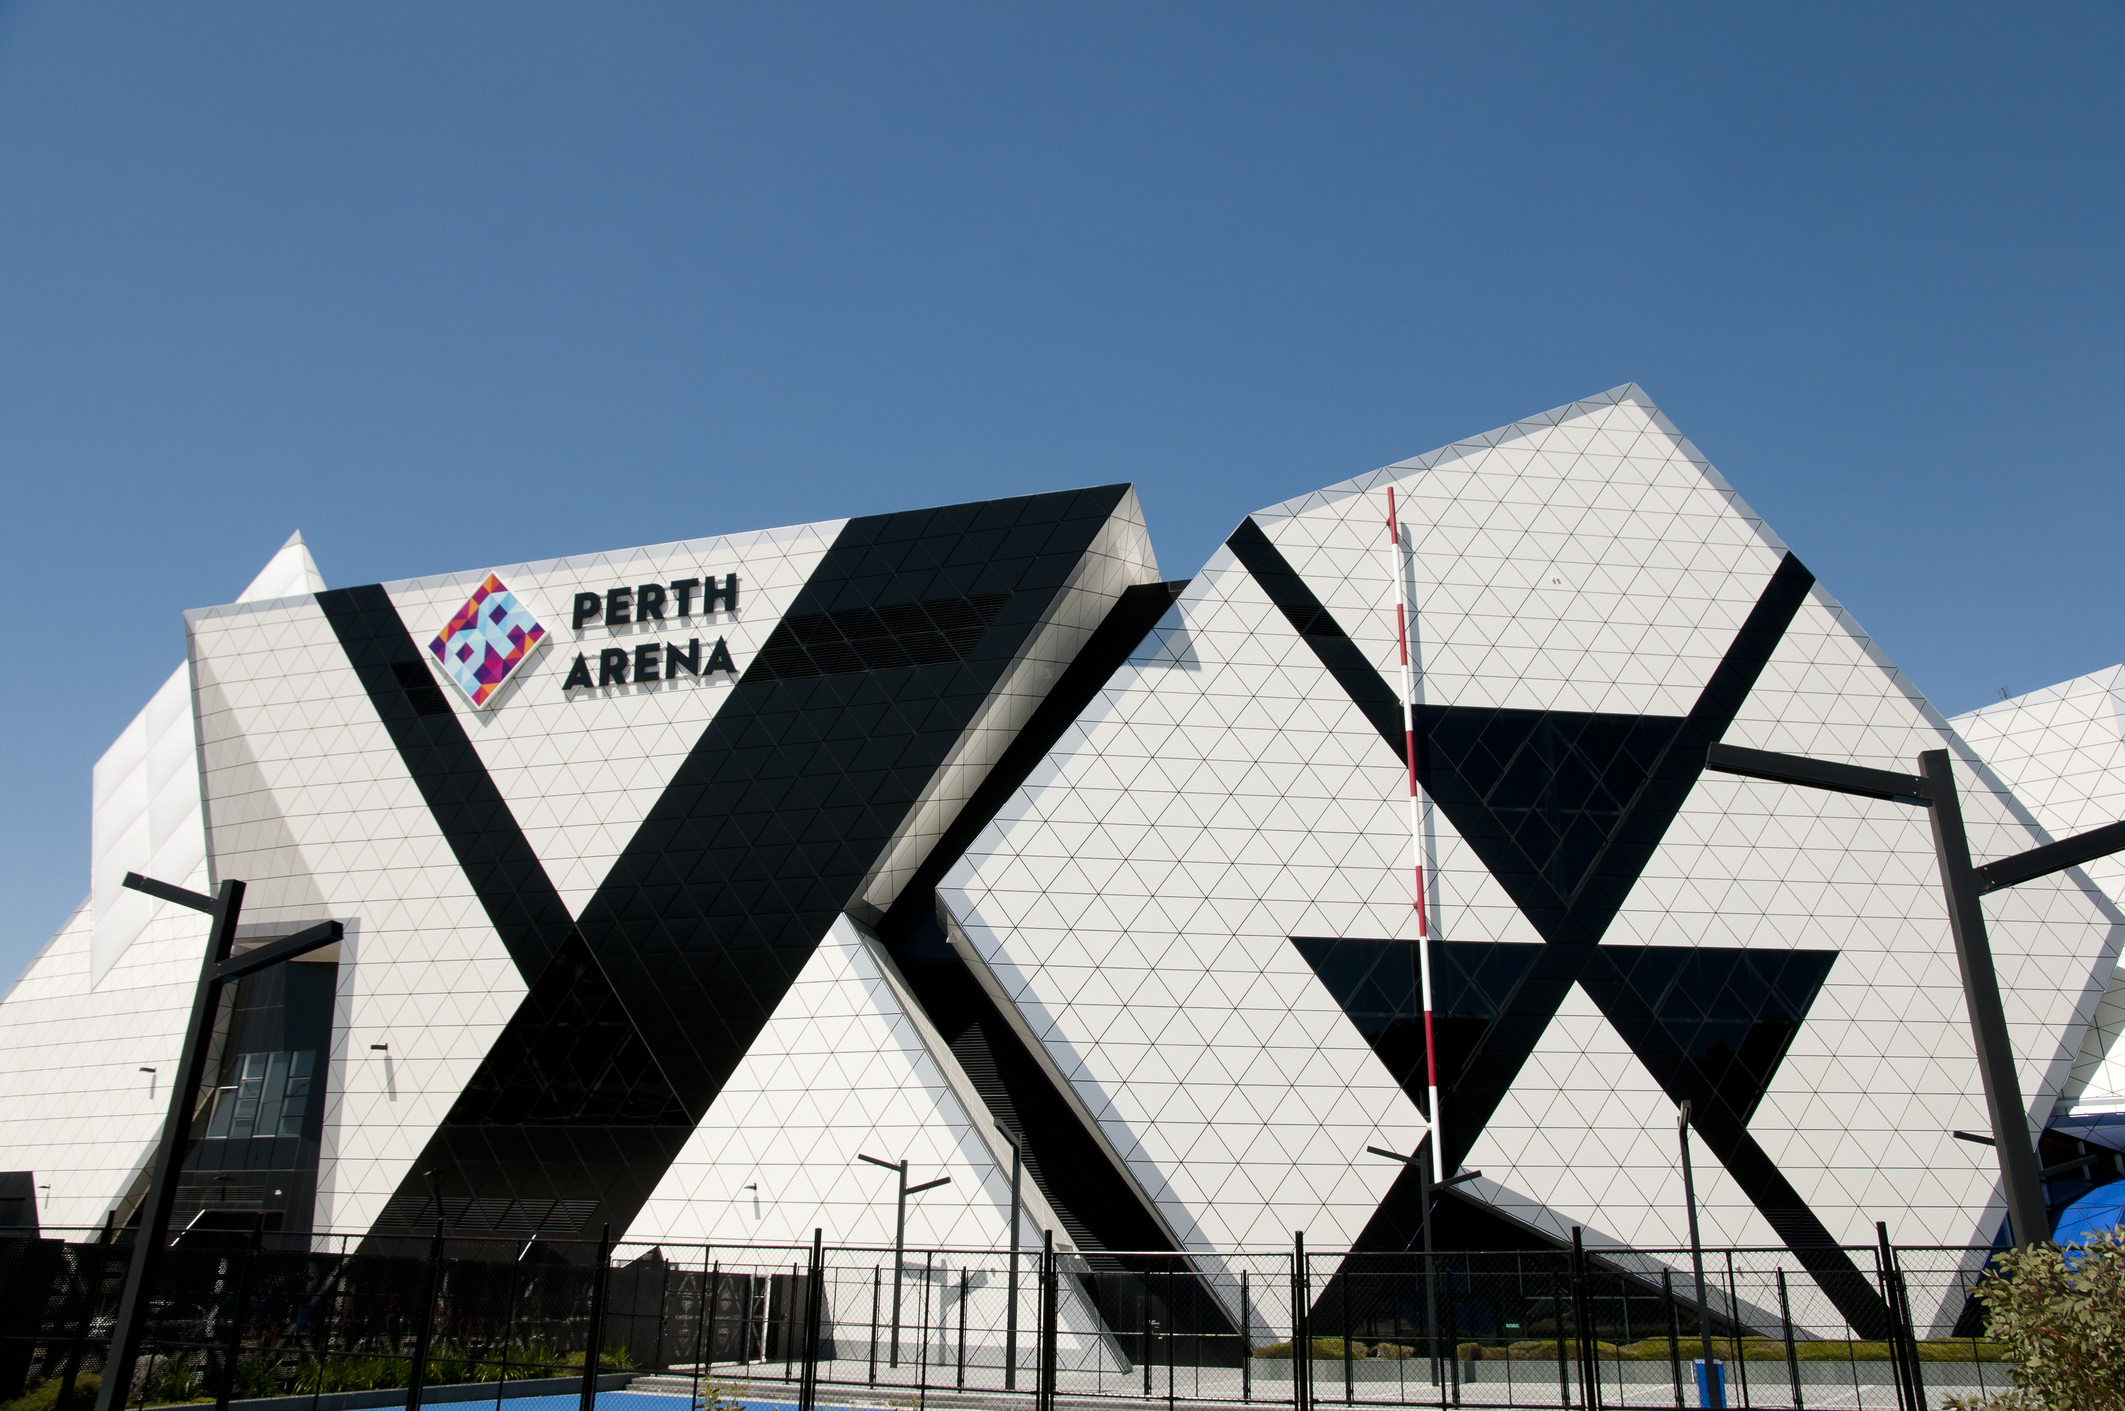 Loadsensing sorgt für einen sichereren Zugang zur Perth Arena